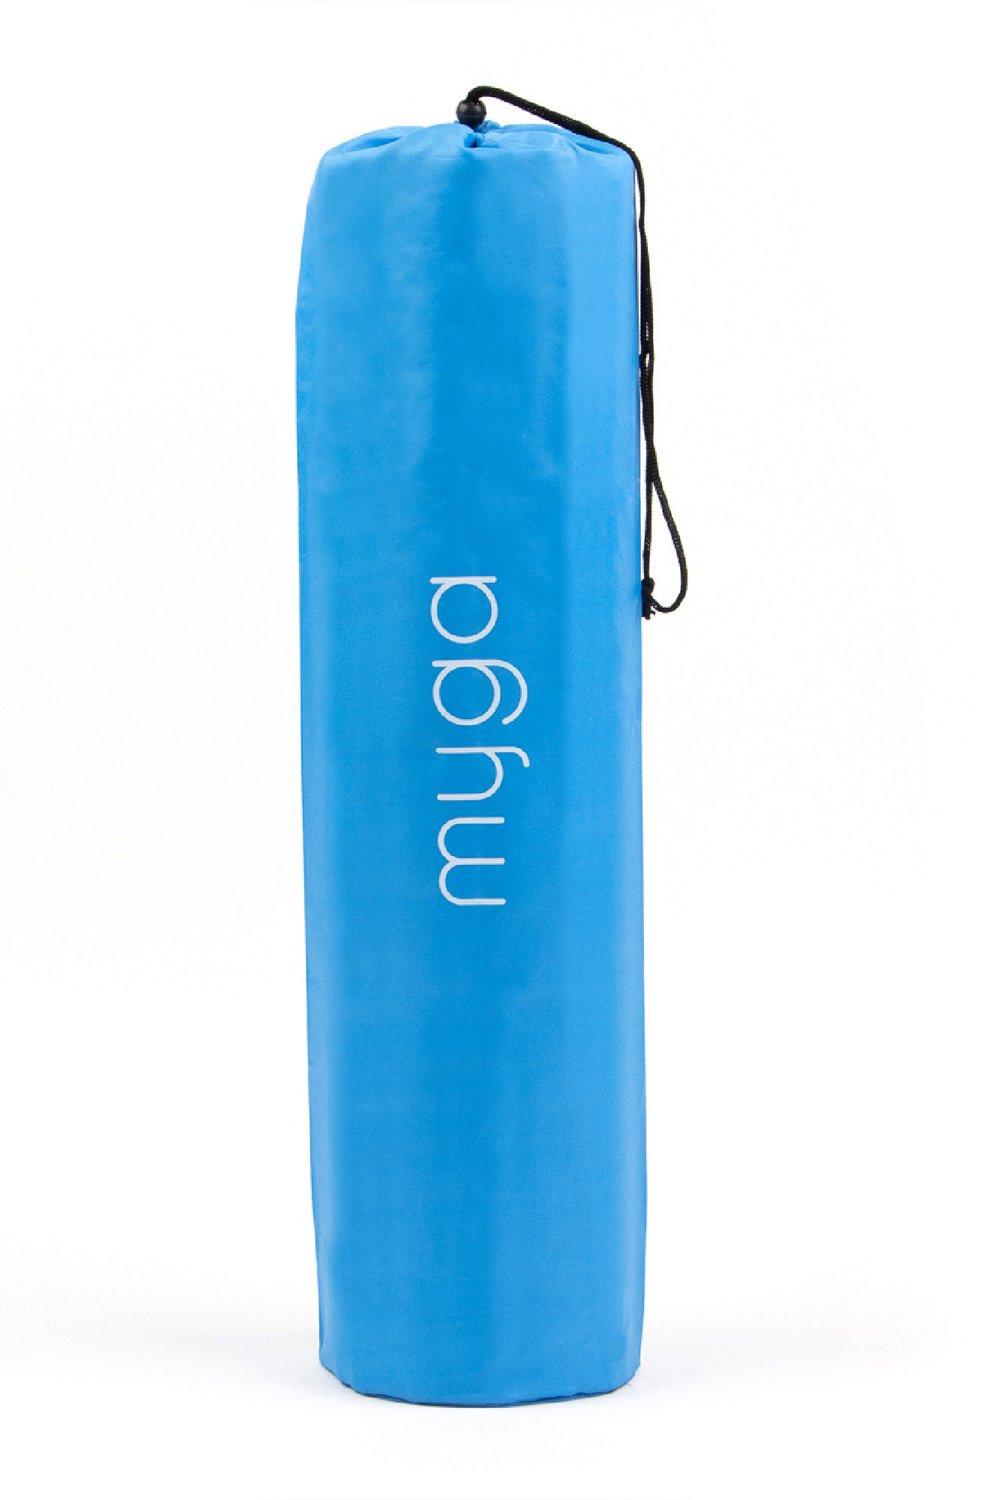 Сумка для переноски коврика для йоги Myga, синий